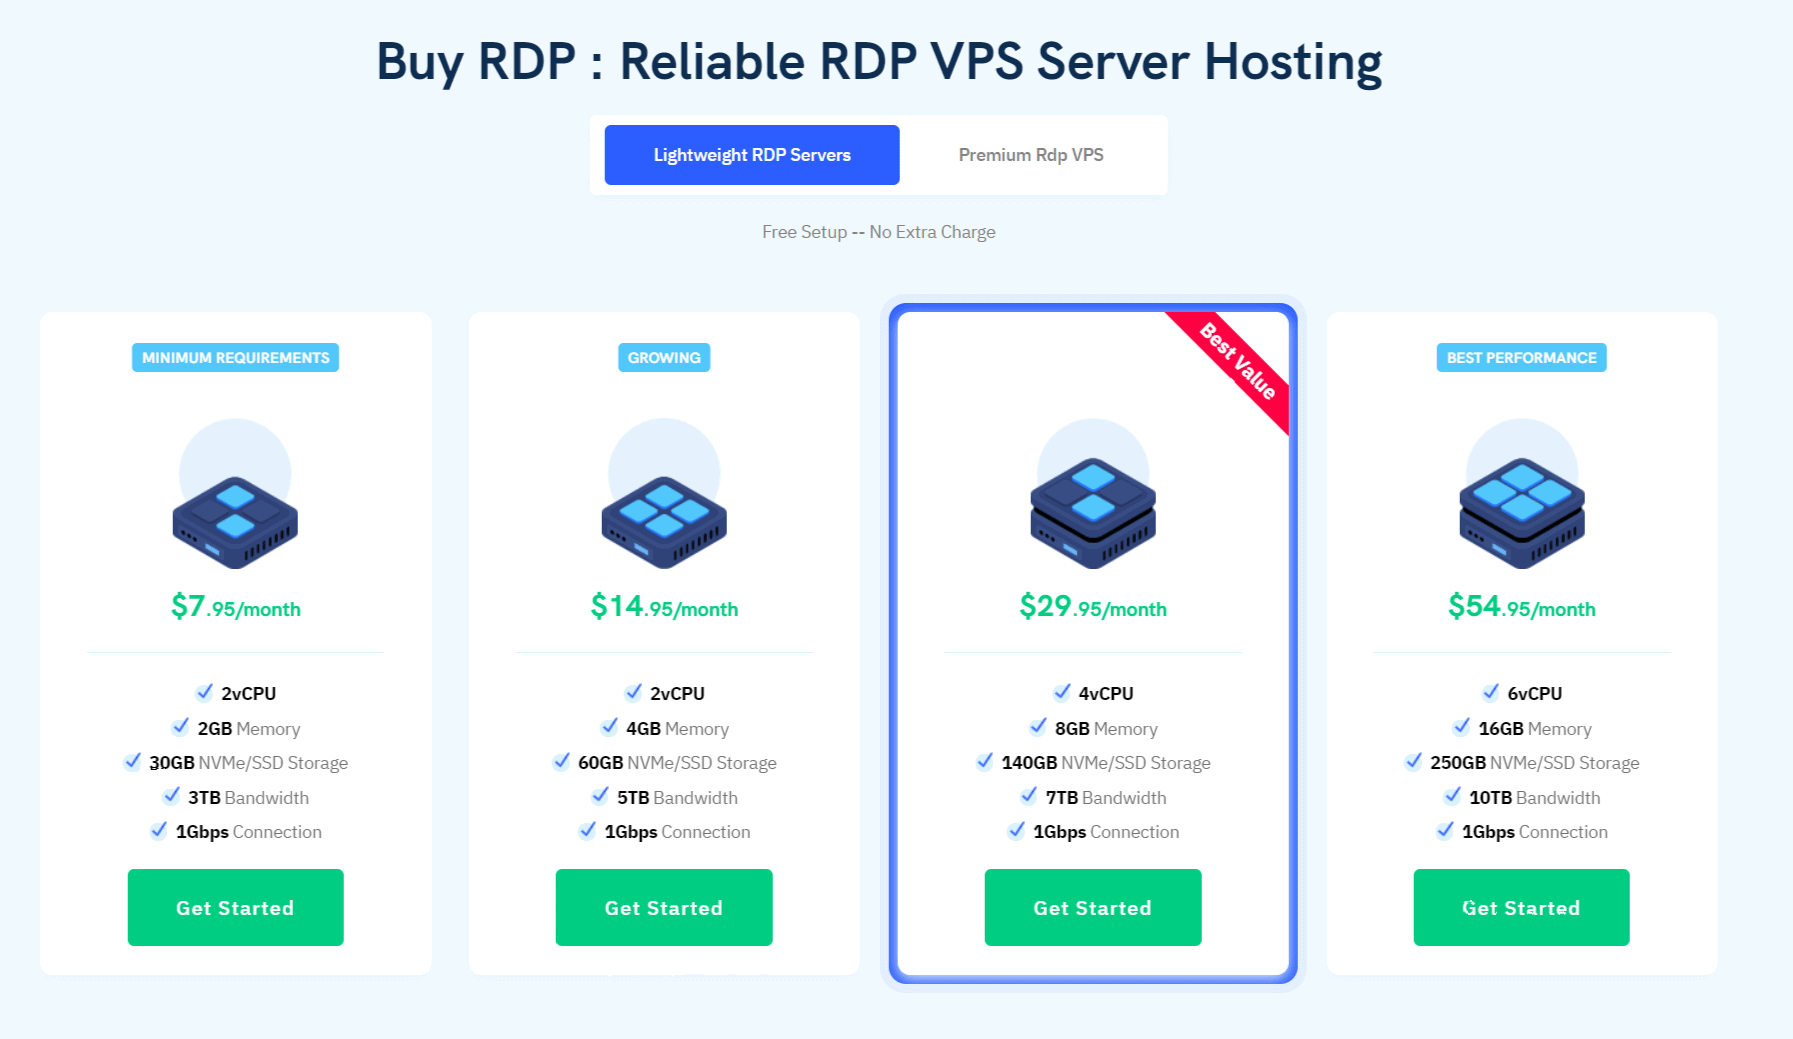 RDP VPS Server